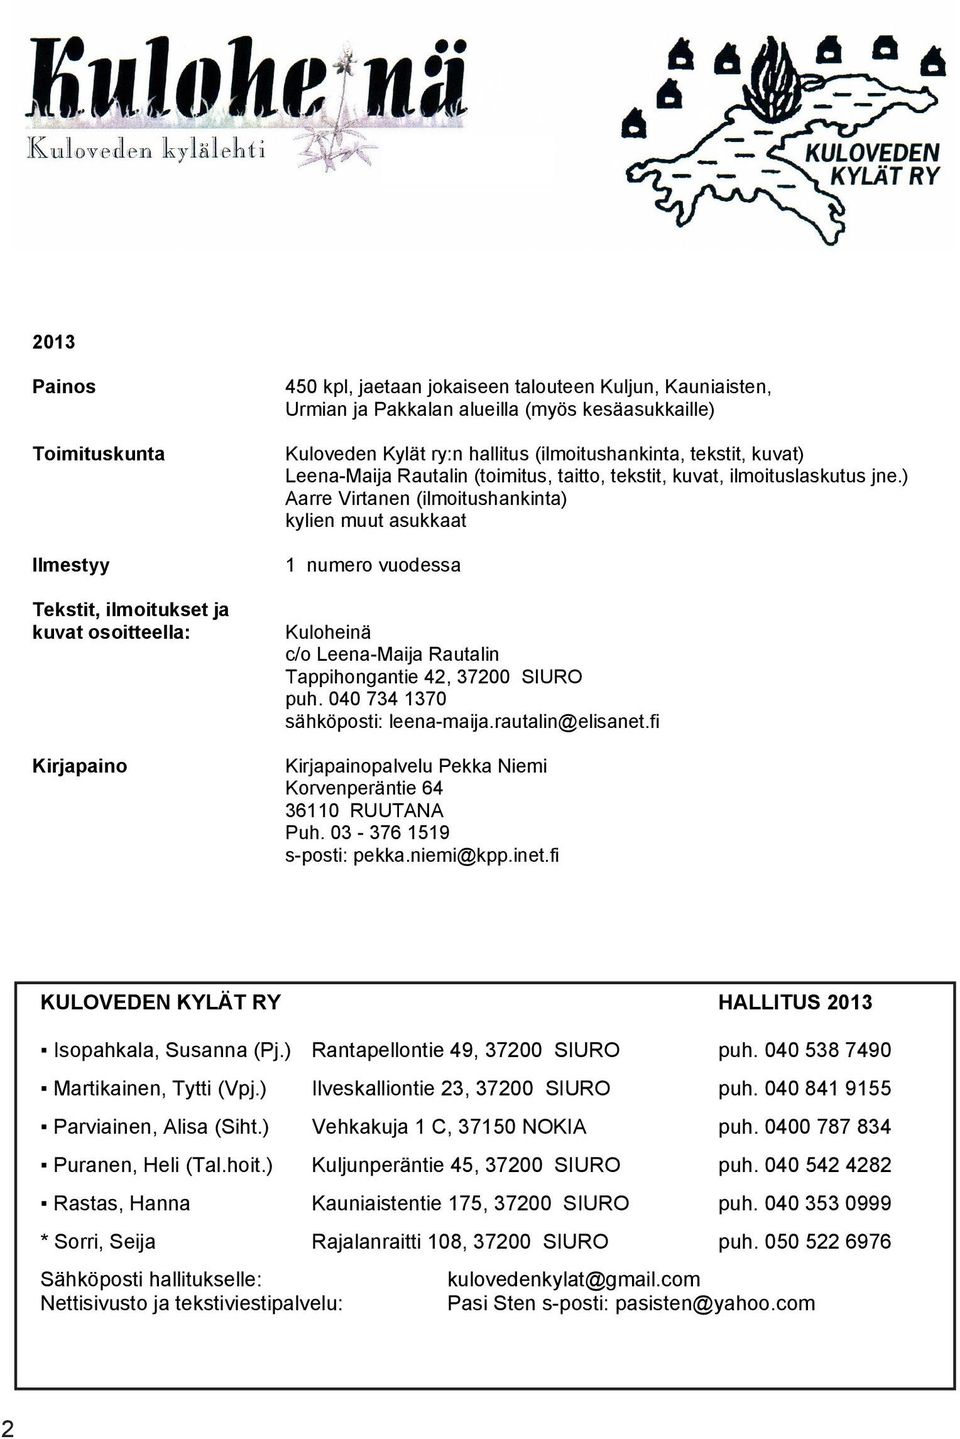 ) Aarre Virtanen (ilmoitushankinta) kylien muut asukkaat 1 numero vuodessa Kuloheinä c/o Leena-Maija Rautalin Tappihongantie 42, 37200 SIURO puh. 040 734 1370 sähköposti: leena-maija.